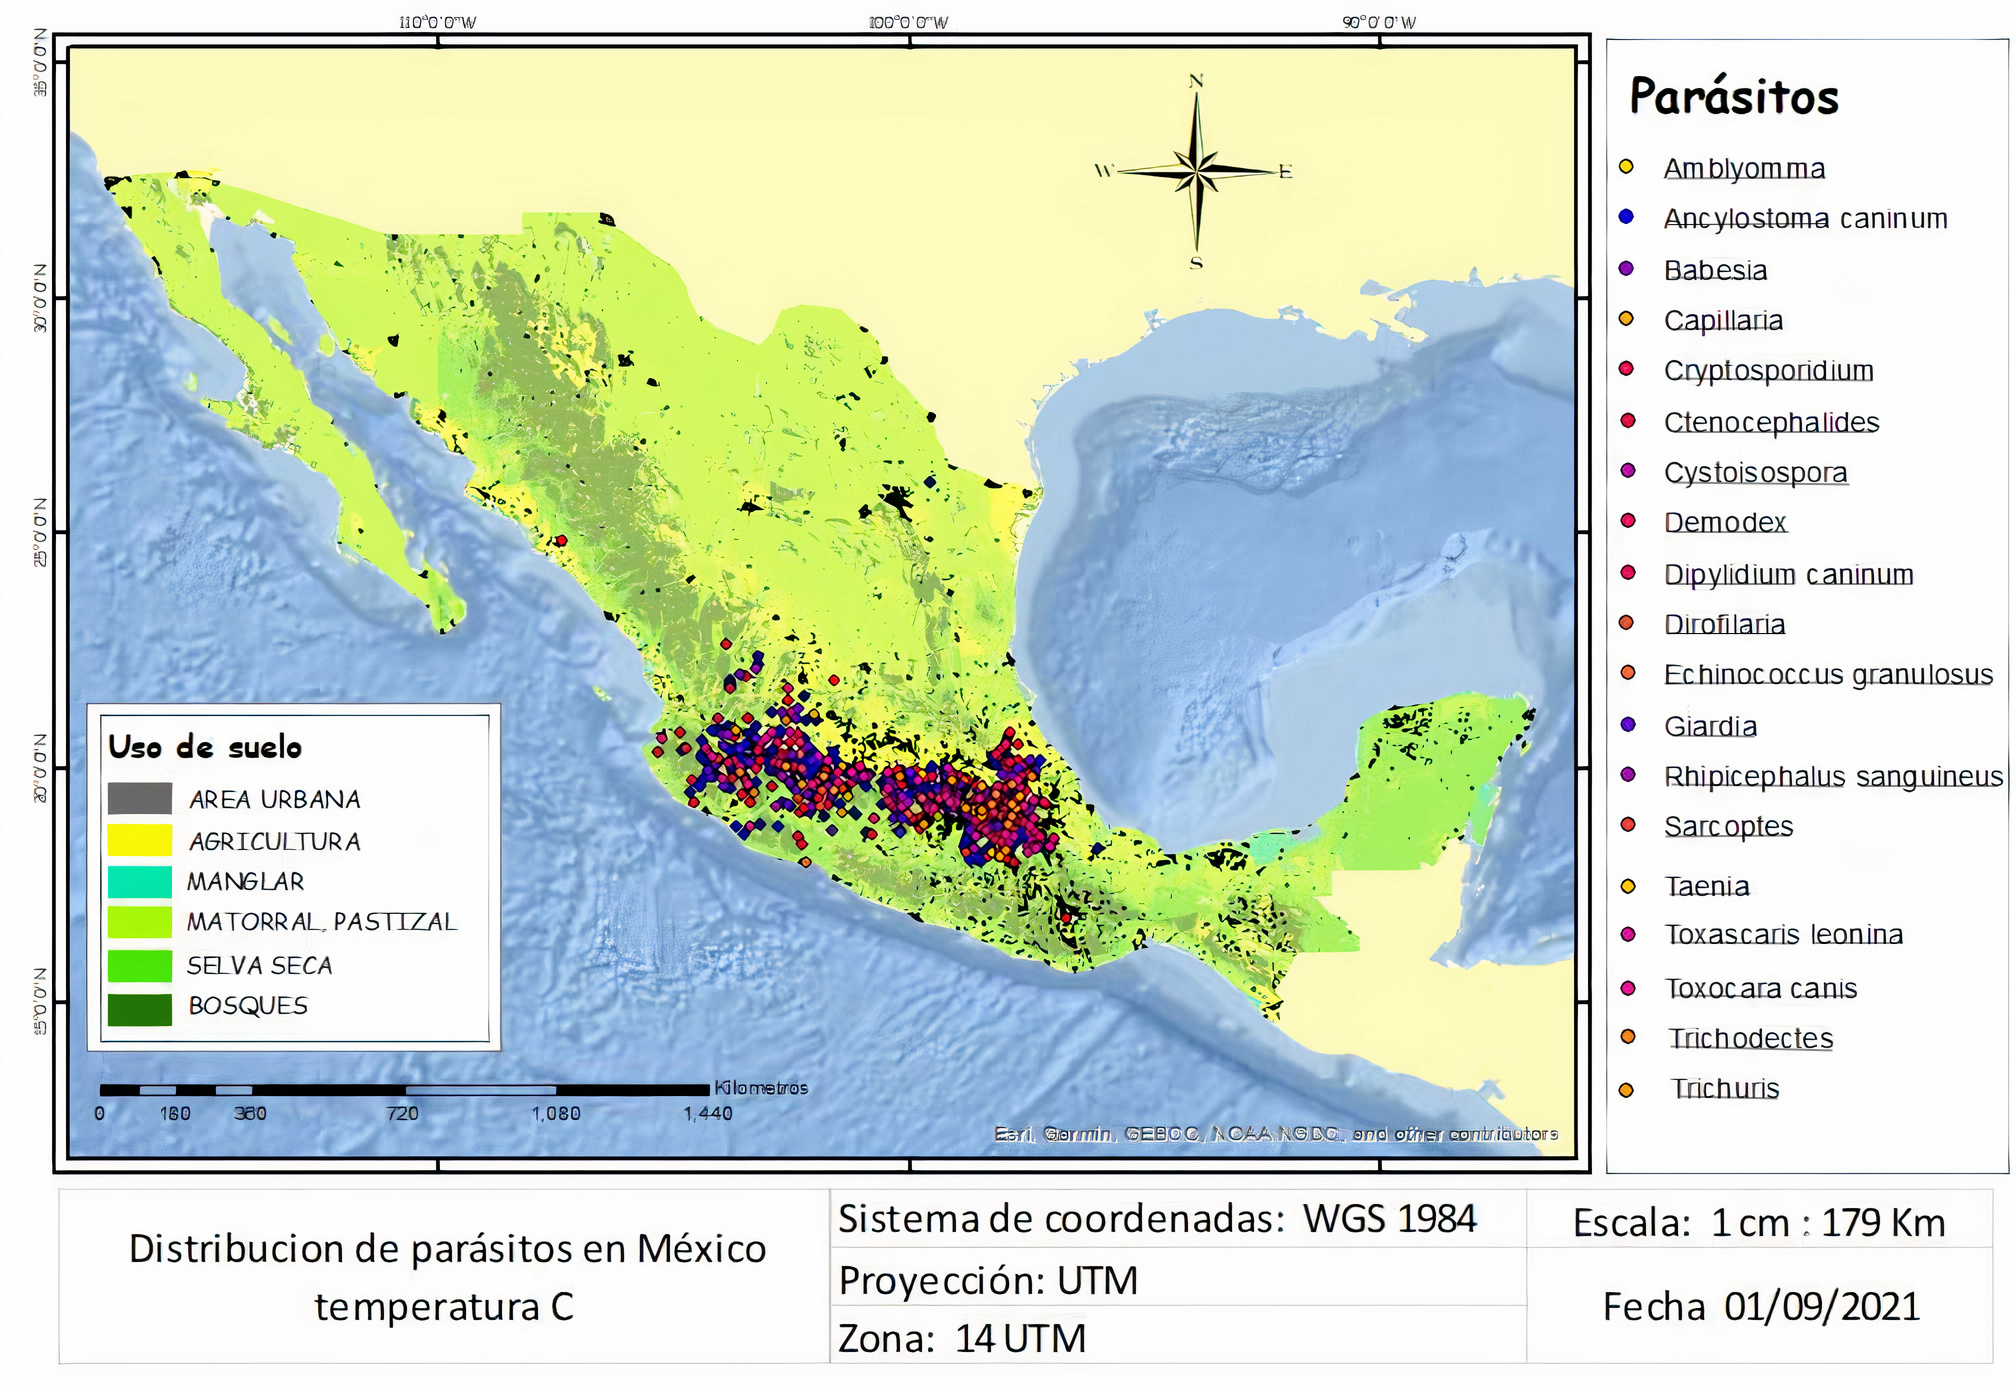 Distribución de parásitos en México, temperatura C.